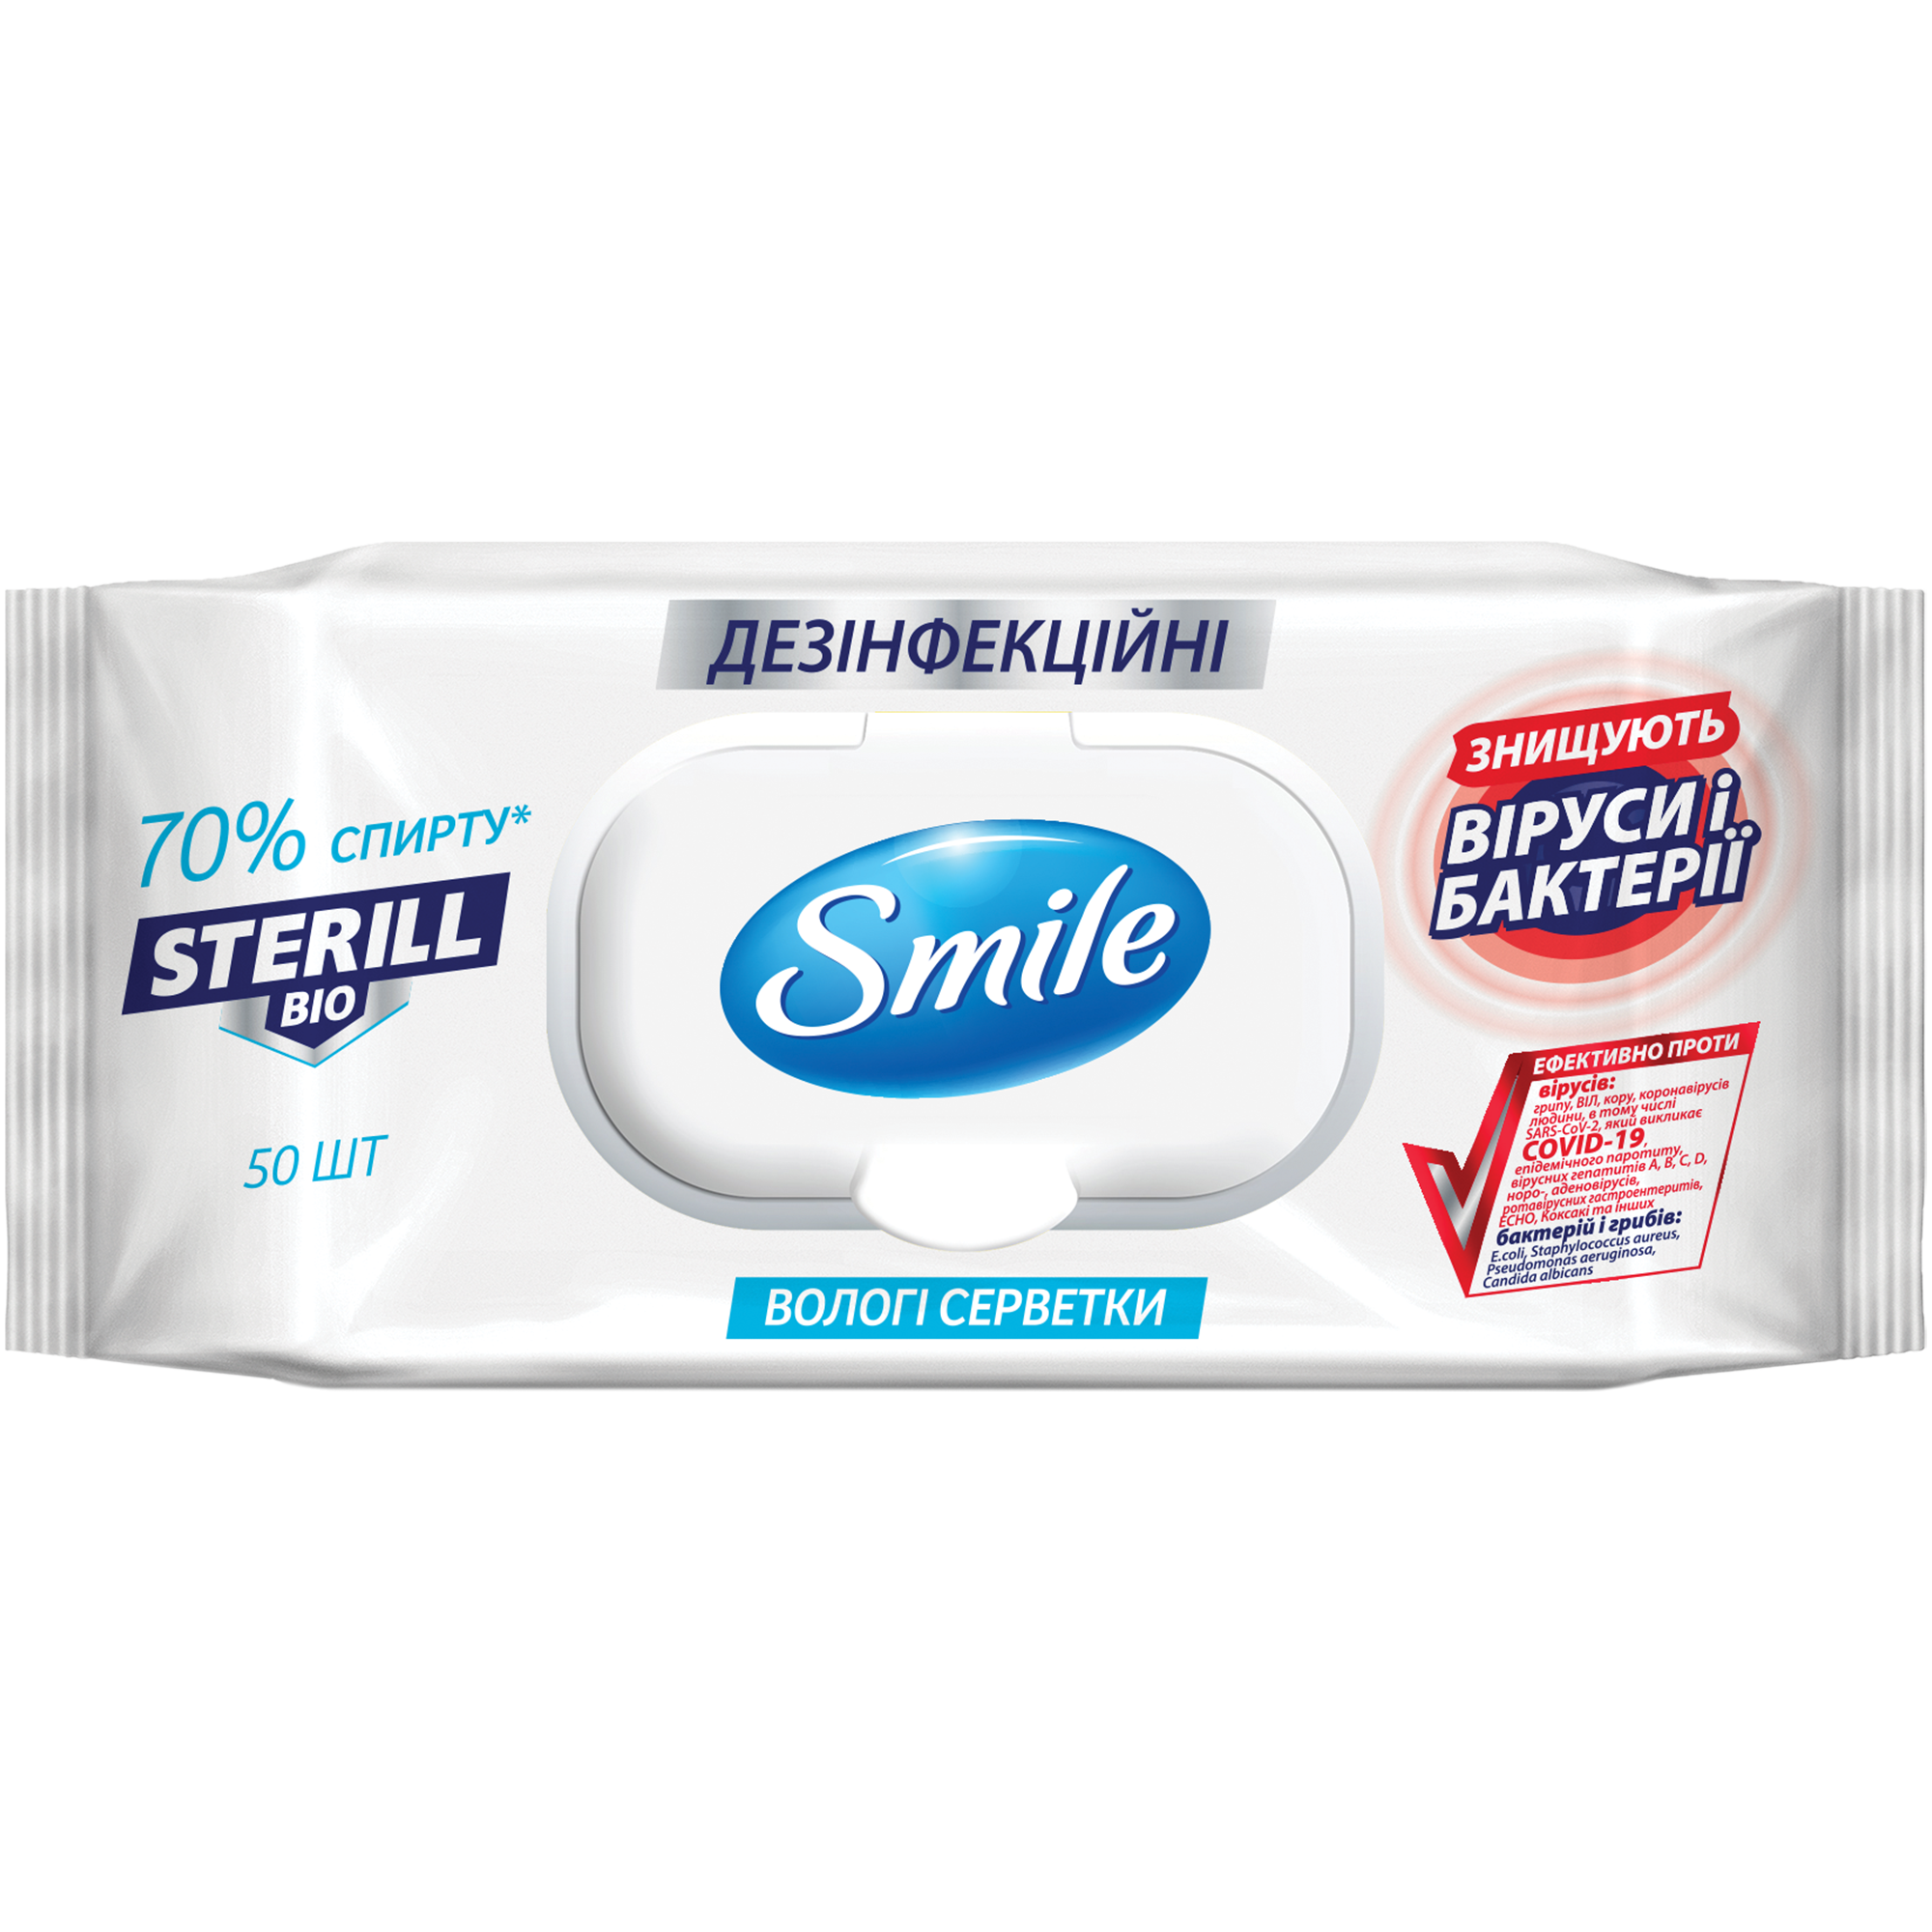 Влажные салфетки дезинфецирующие Smile Sterill Bio 50 шт. - фото 1